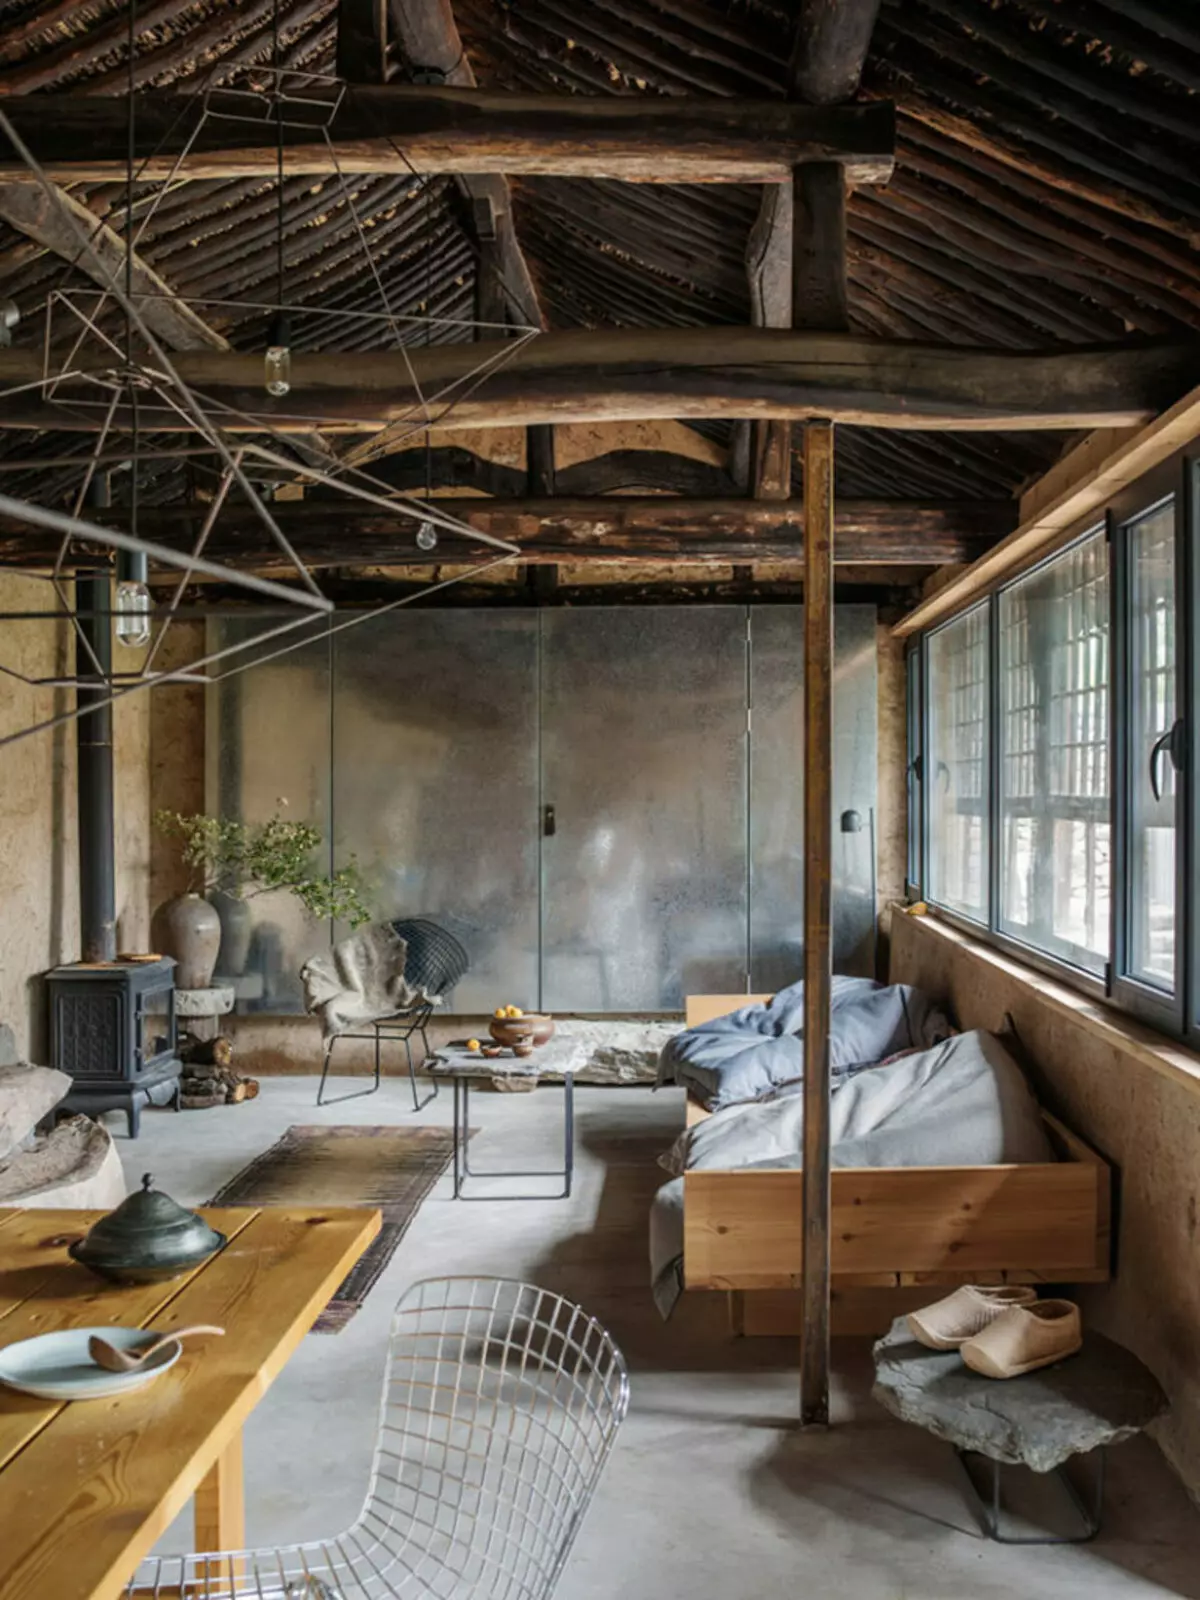 Eidel Villa an der Géigend vum Peking gouf an e gemittleche Loftraum transforméiert